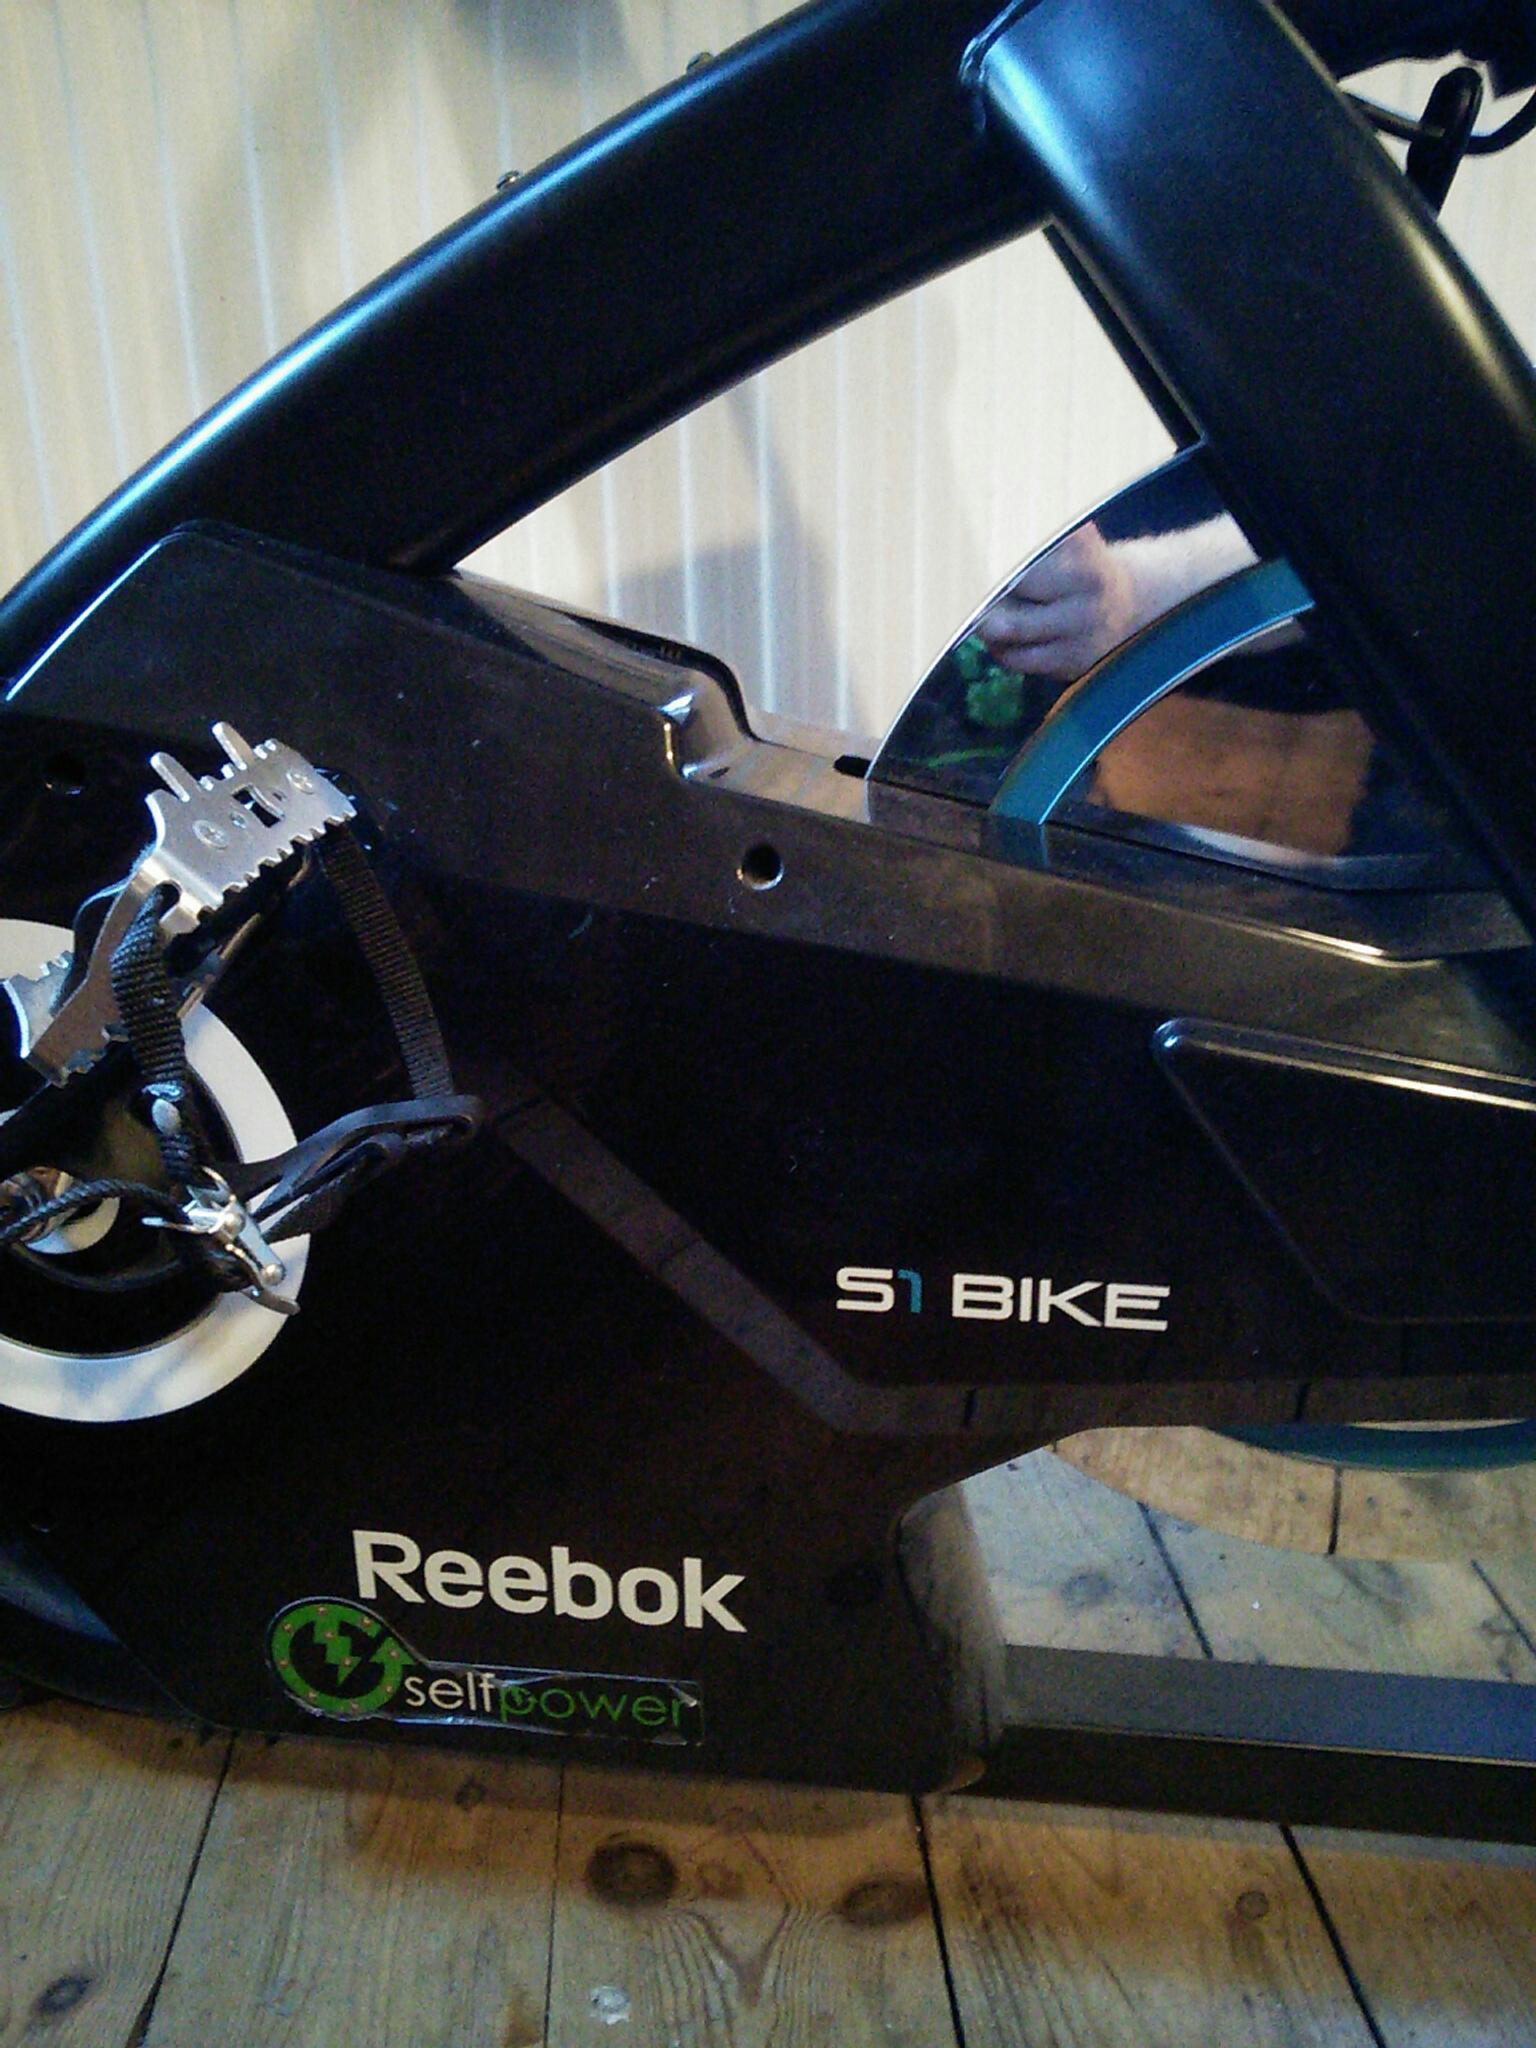 reebok s1 spin bike